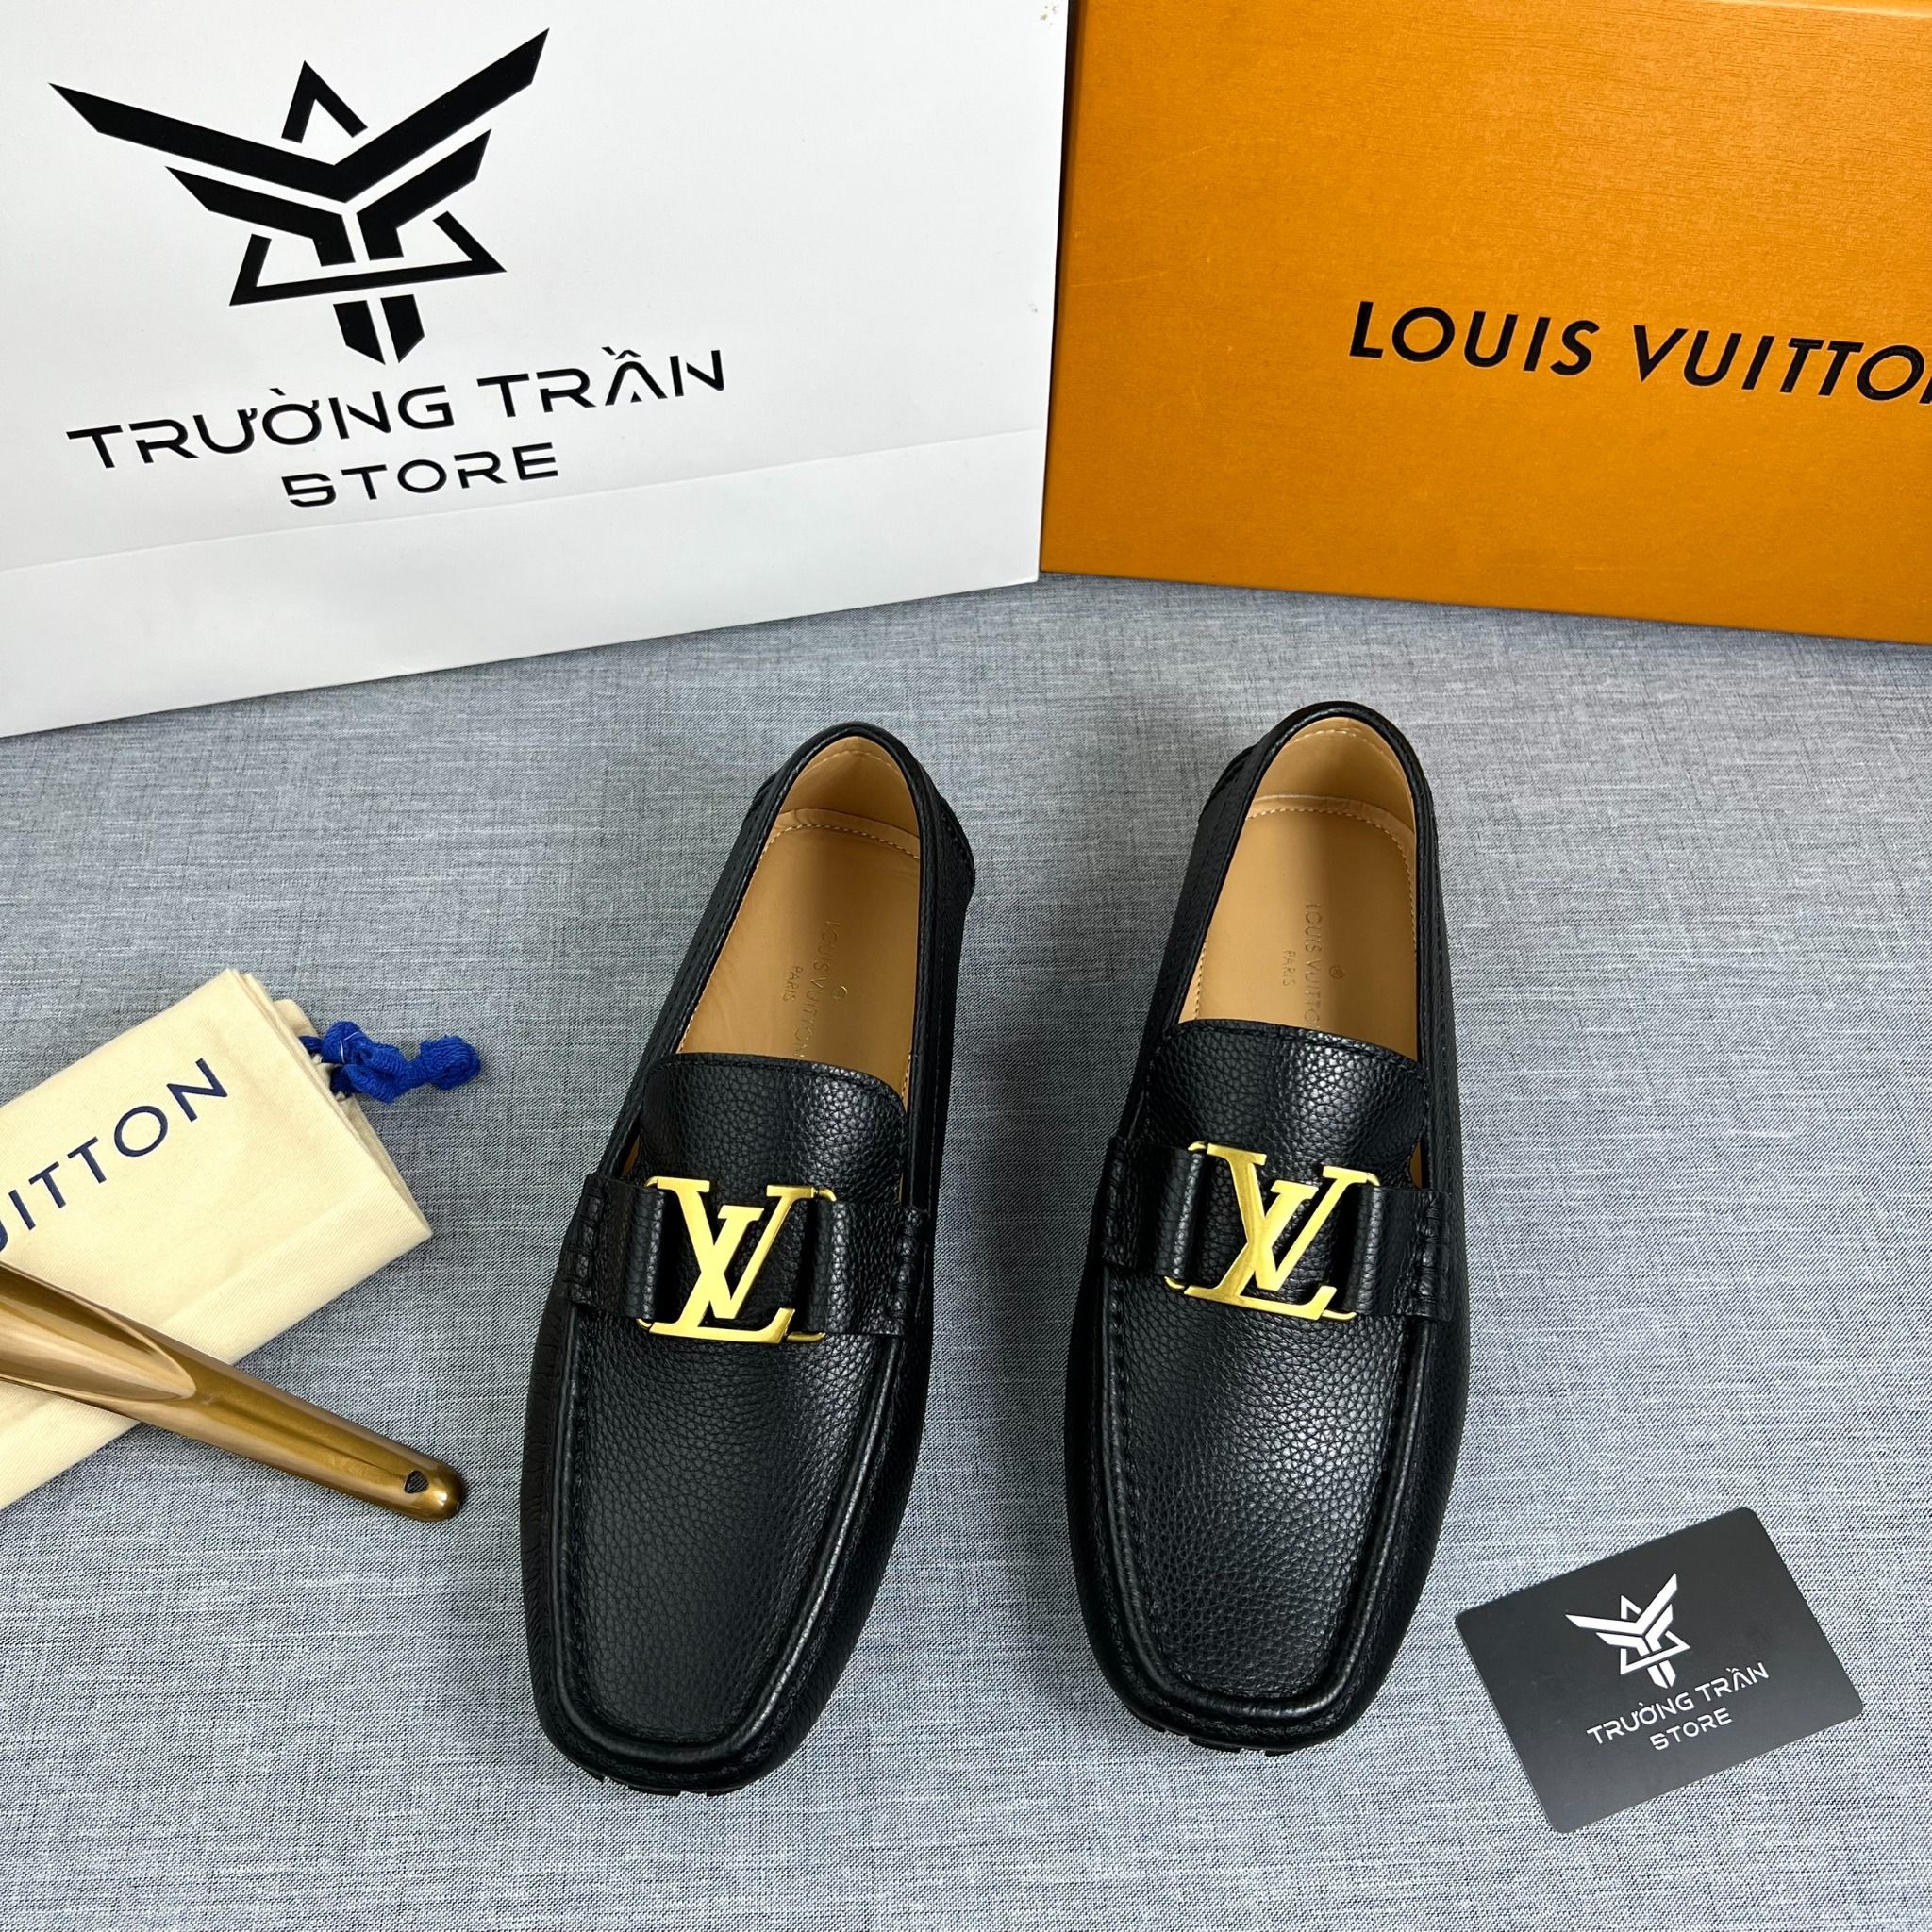 Louis Vuitton Shoes Men  Etsy